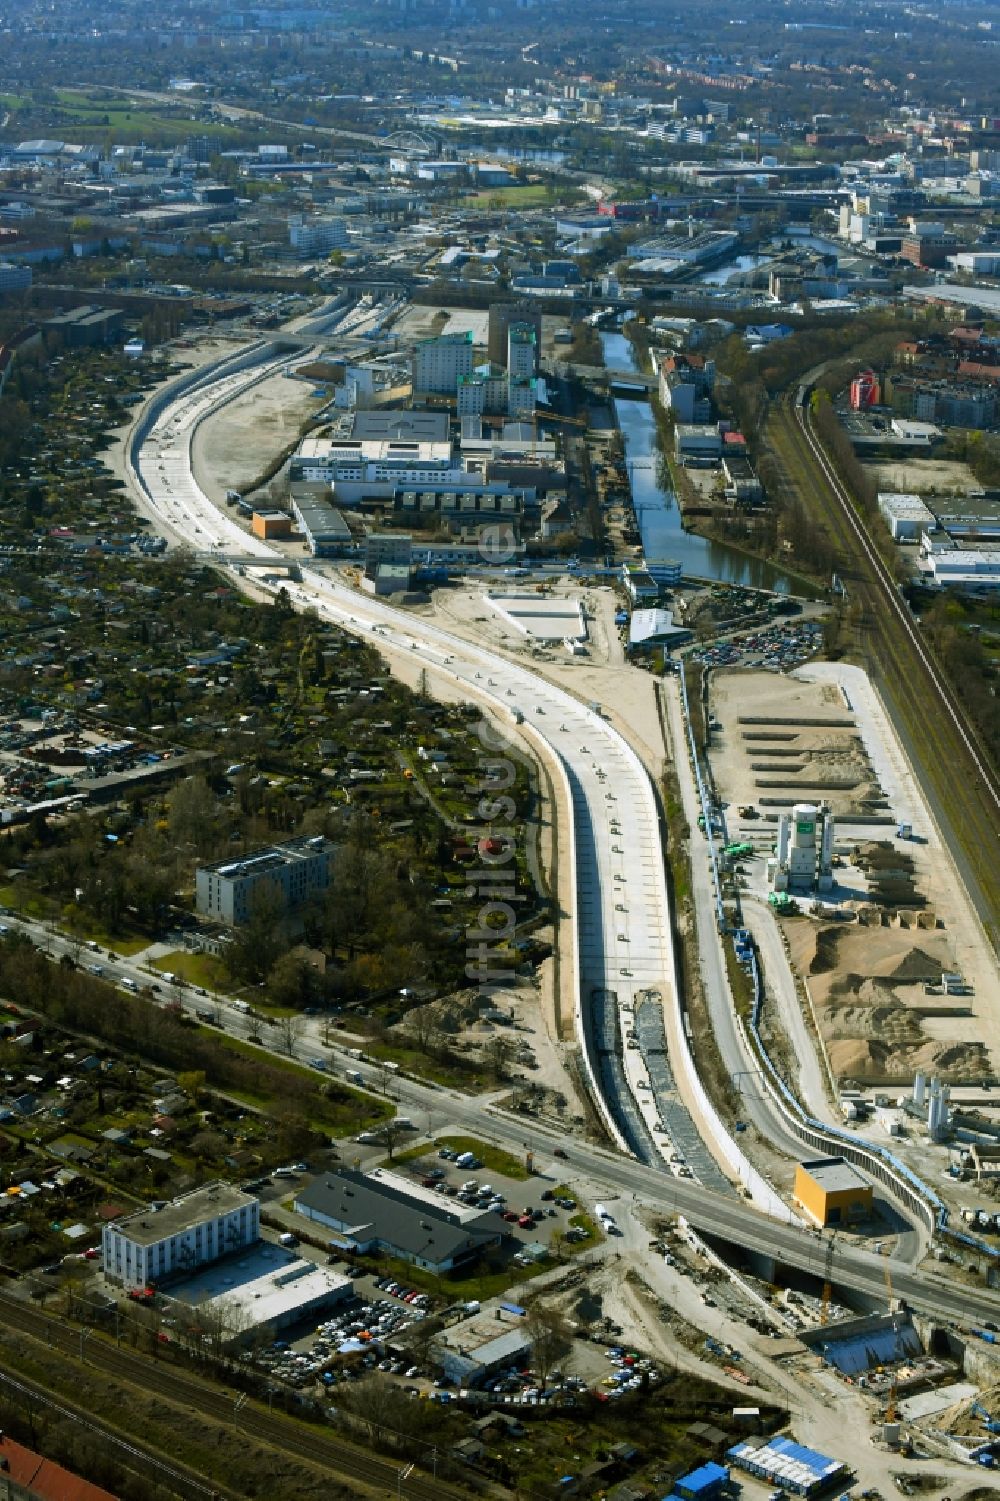 Berlin aus der Vogelperspektive: Baustellen zum Neubau der Verlängerung der Stadtautobahn A100 in Berlin Treptow